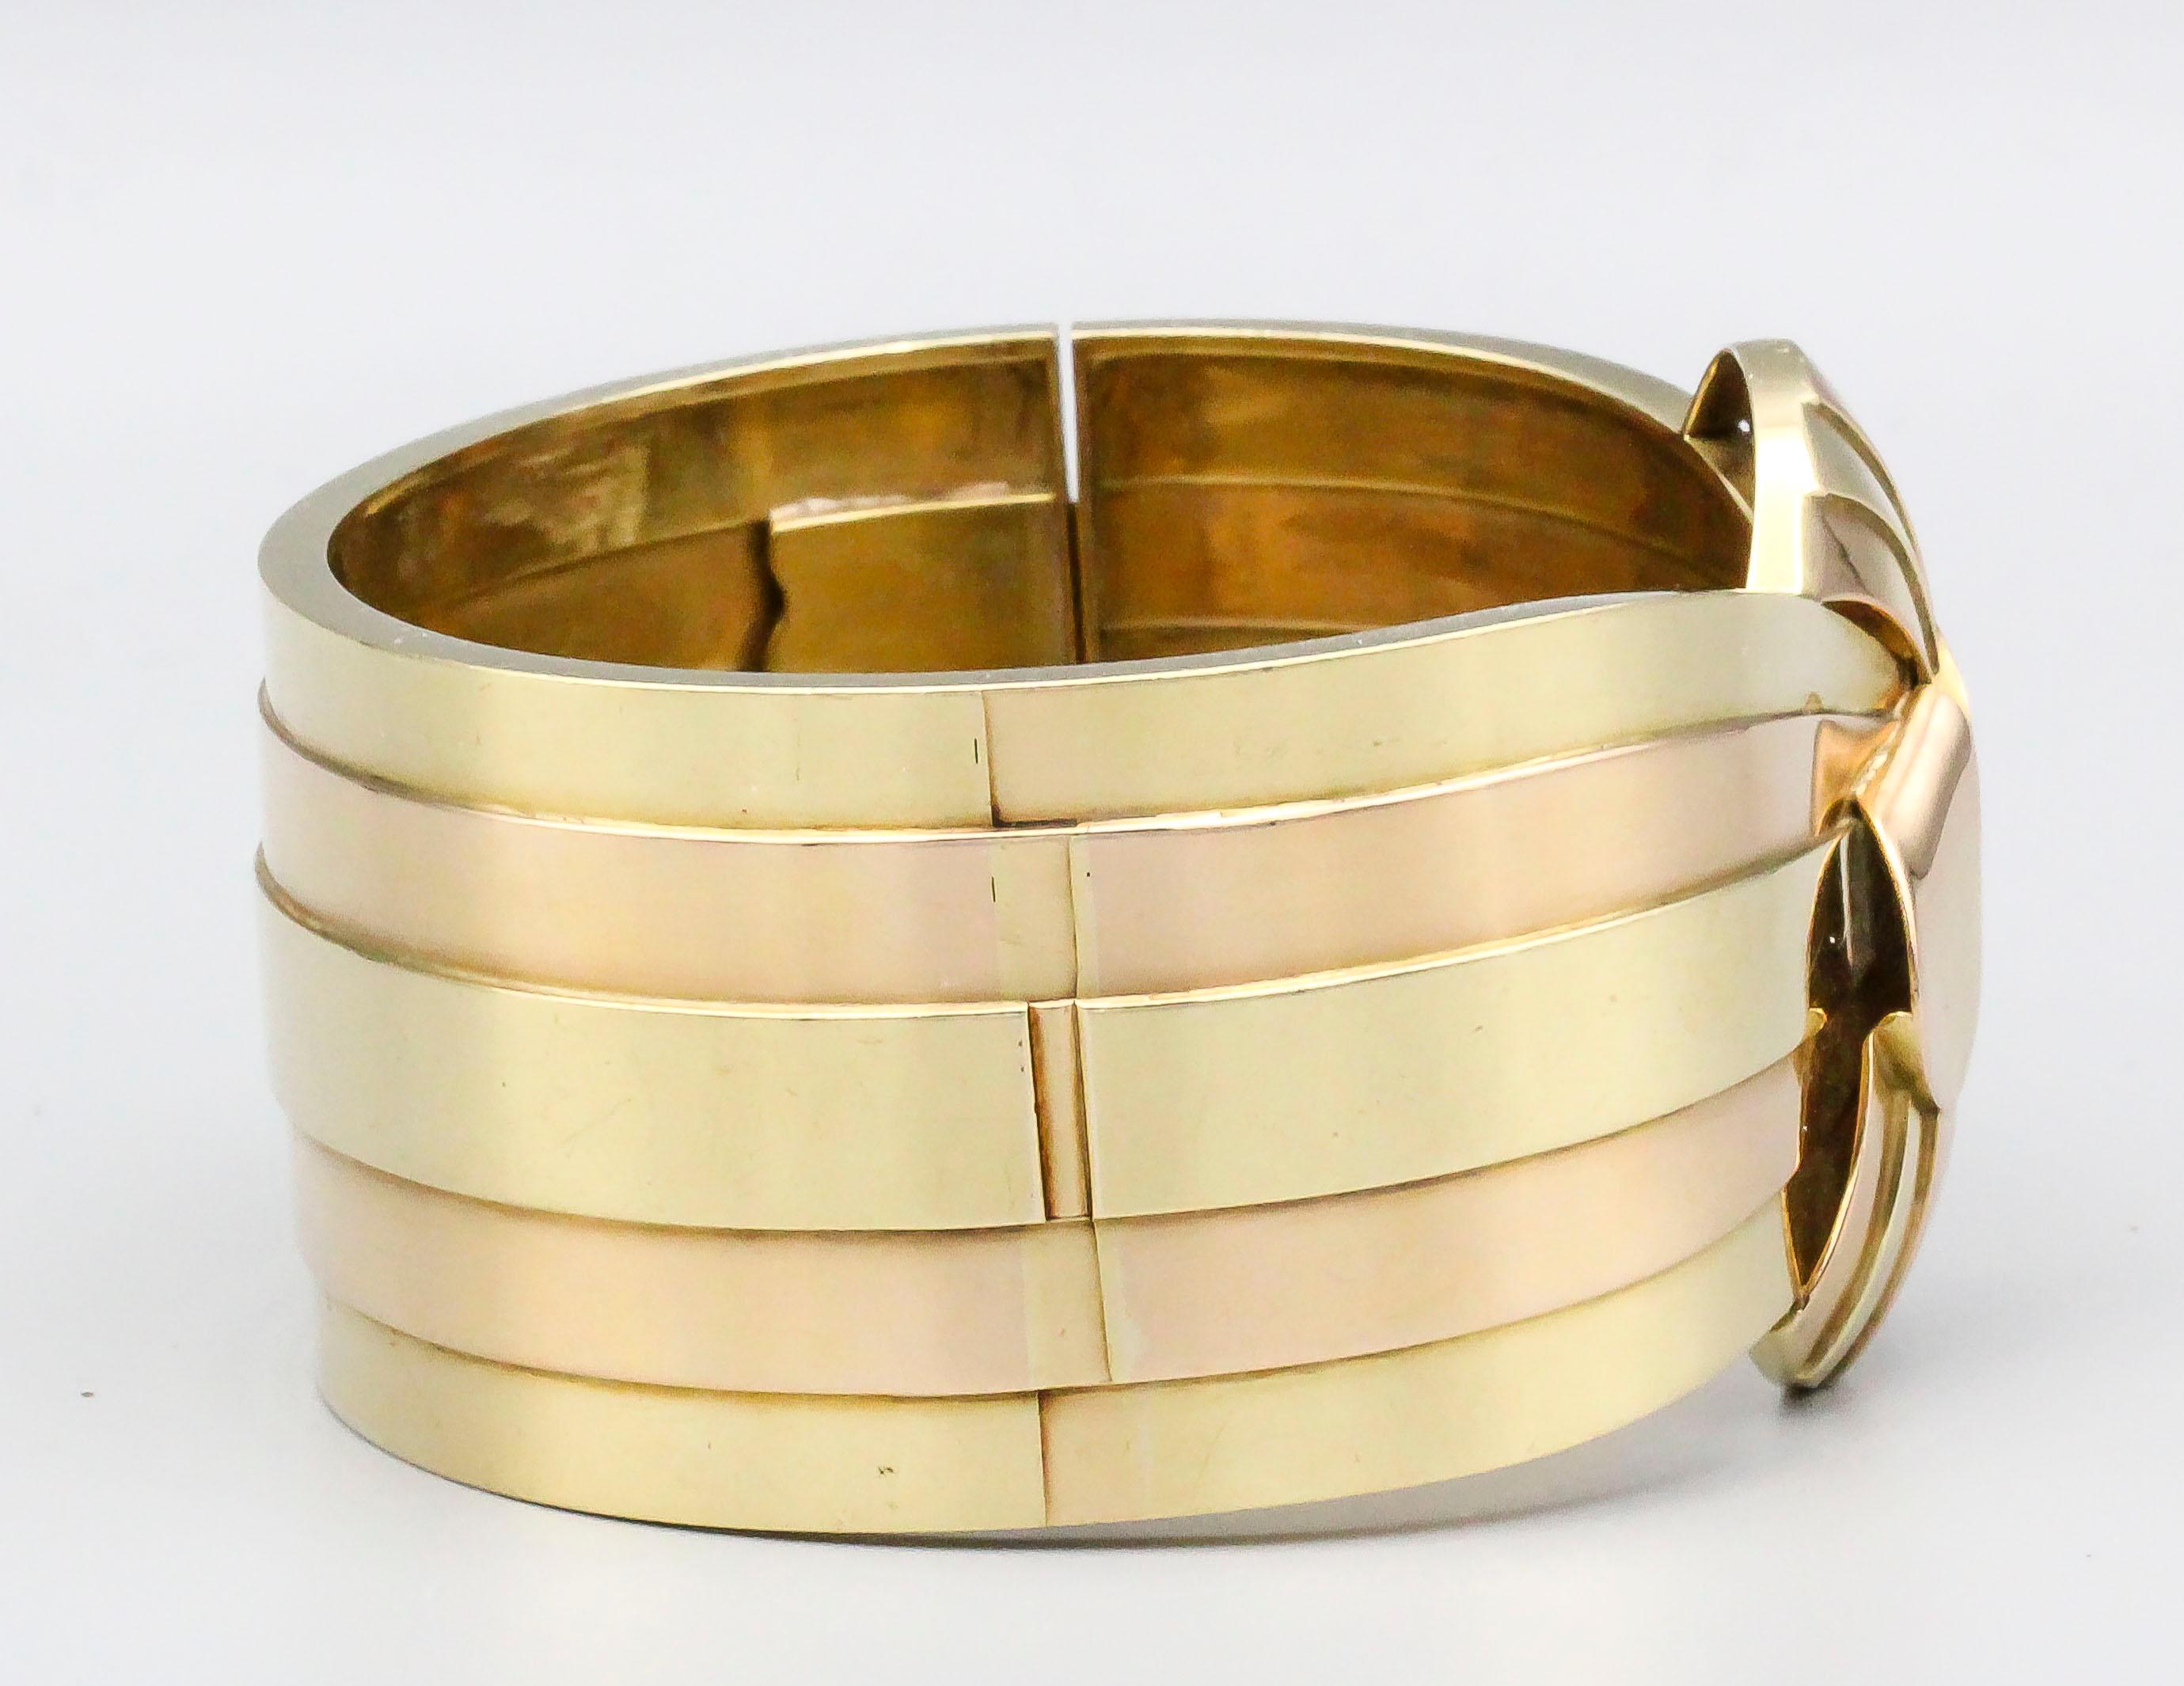 Beau bracelet bangle en or jaune et rose 18k, d'origine française et datant des années 1940.  Pesant plus de 100 grammes, le bracelet est d'un poids substantiel et mesure plus de 1,5 pouce à son point le plus large.  S'adapte confortablement à un